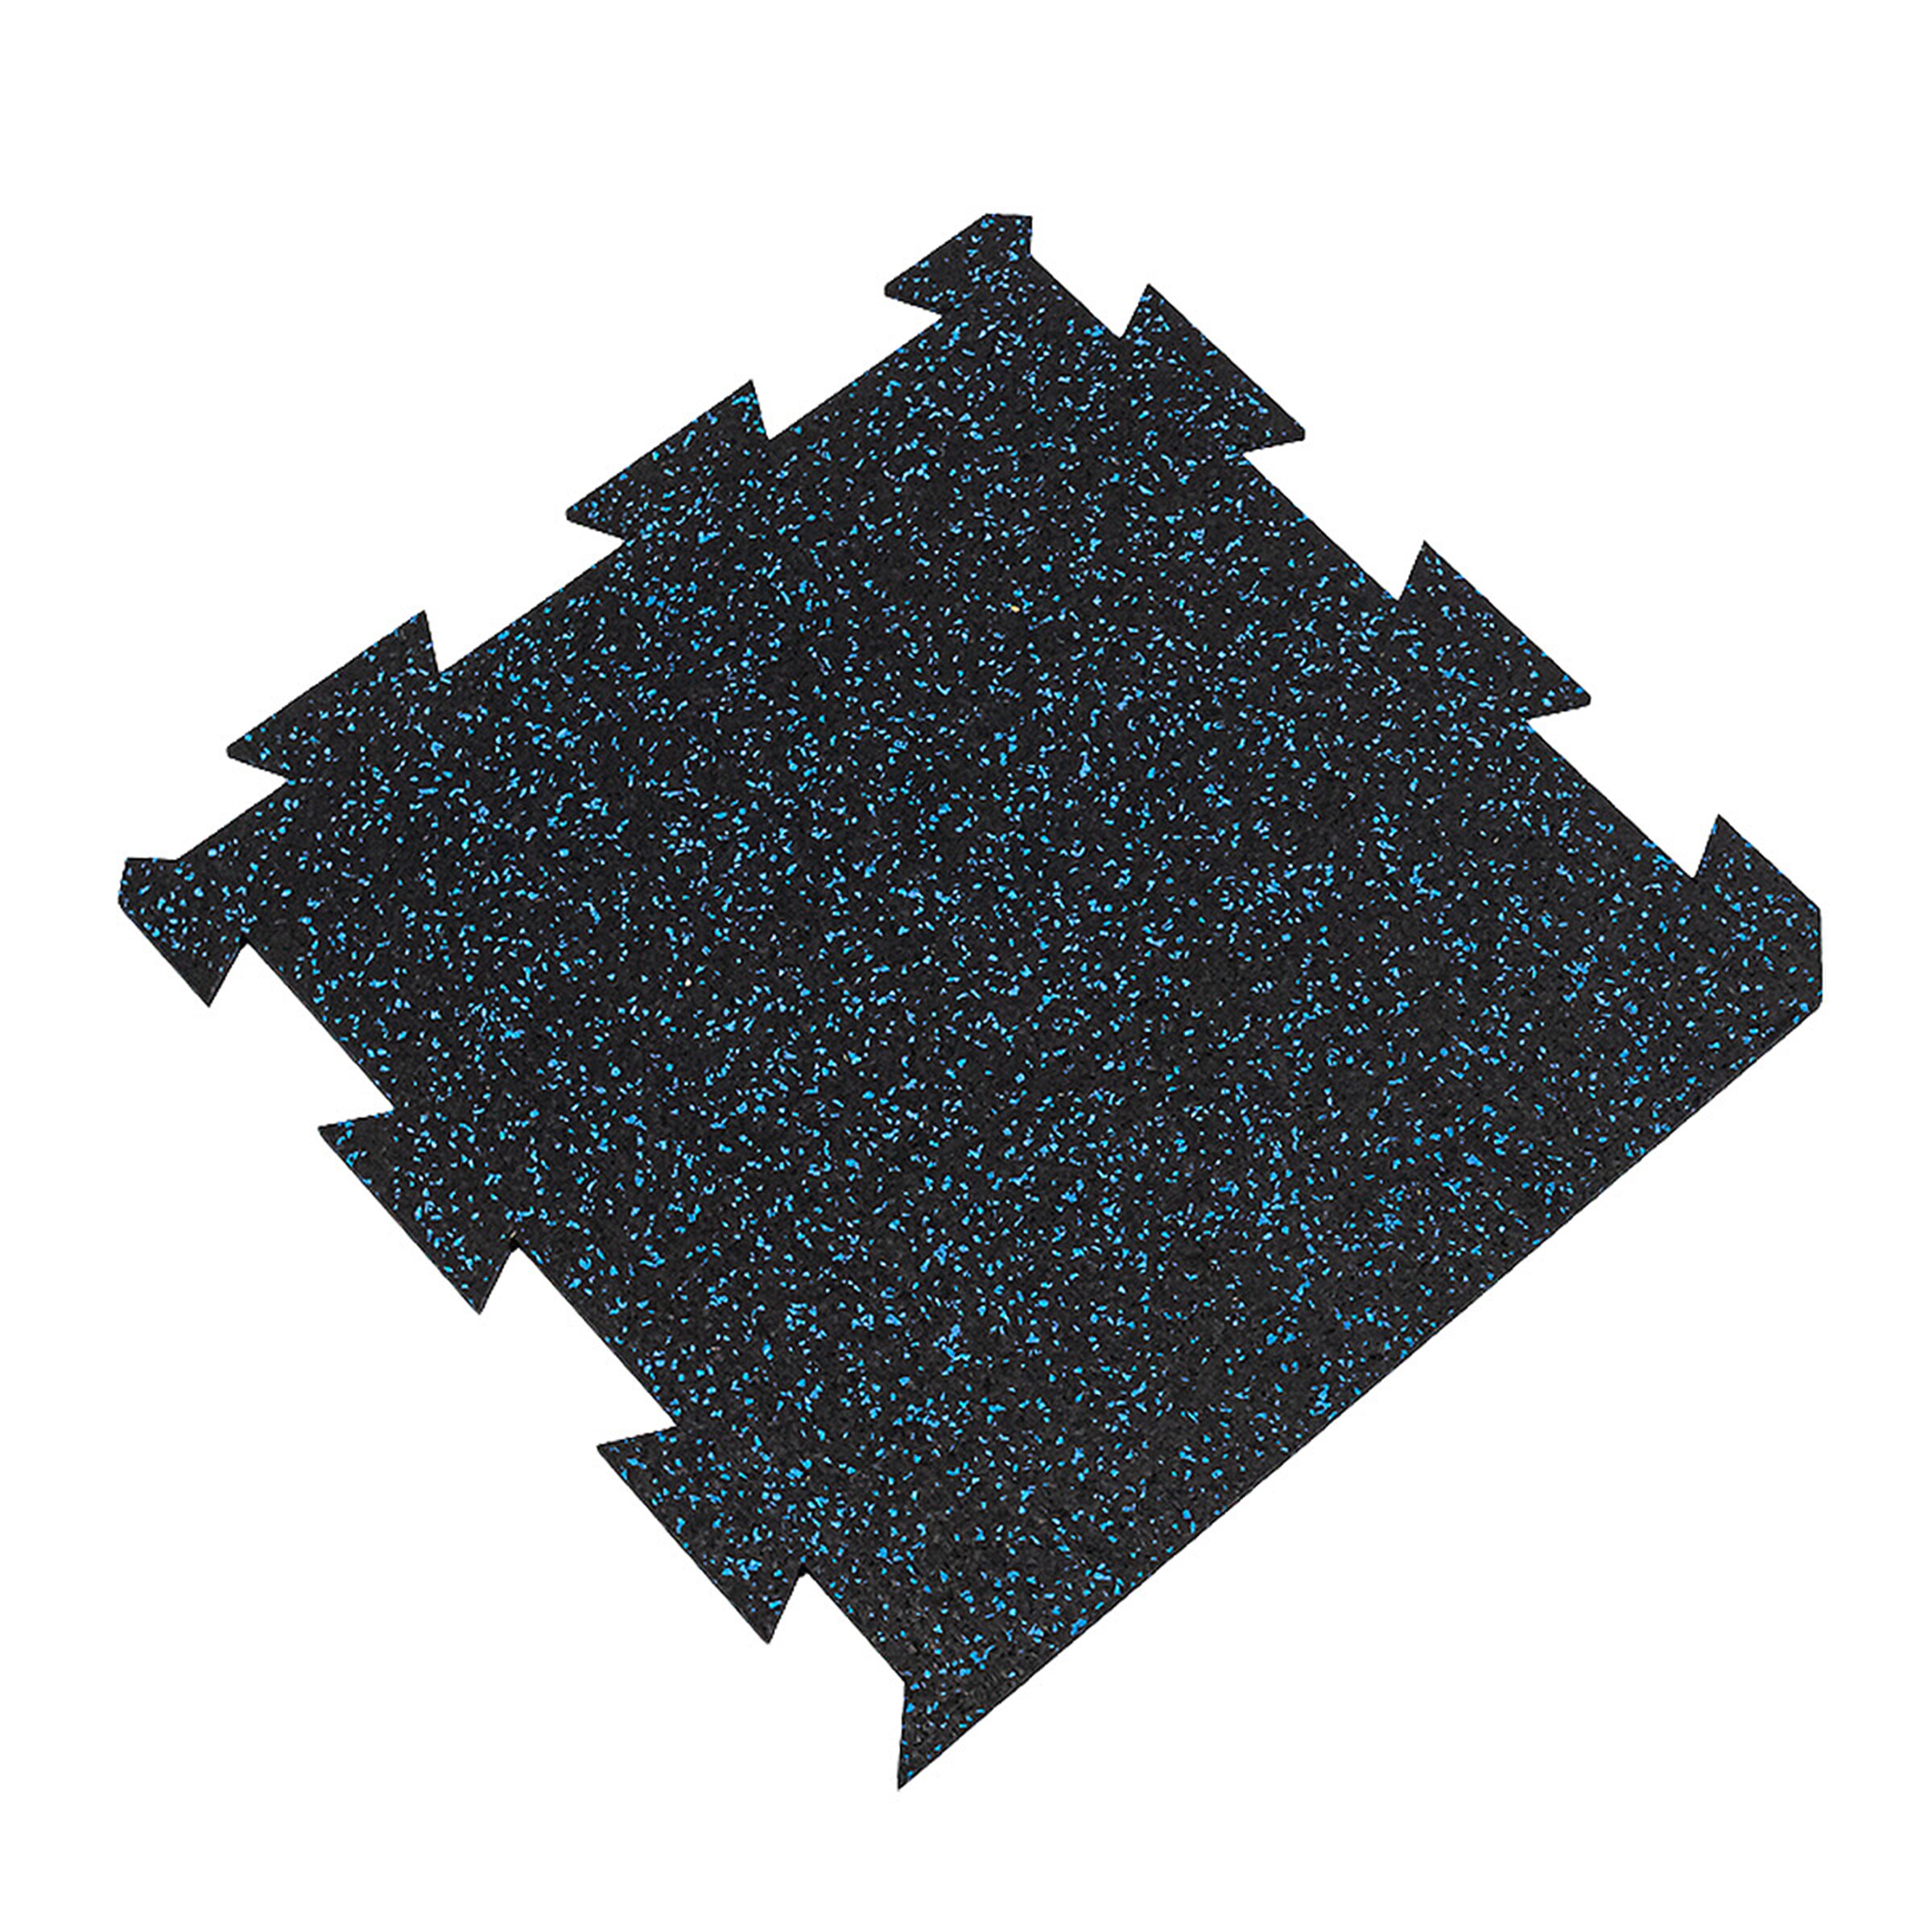 Černo-modrá gumová modulová puzzle dlažba FLOMA FitFlo SF1050 - délka 50 cm, šířka 50 cm, výška 0,8 cm